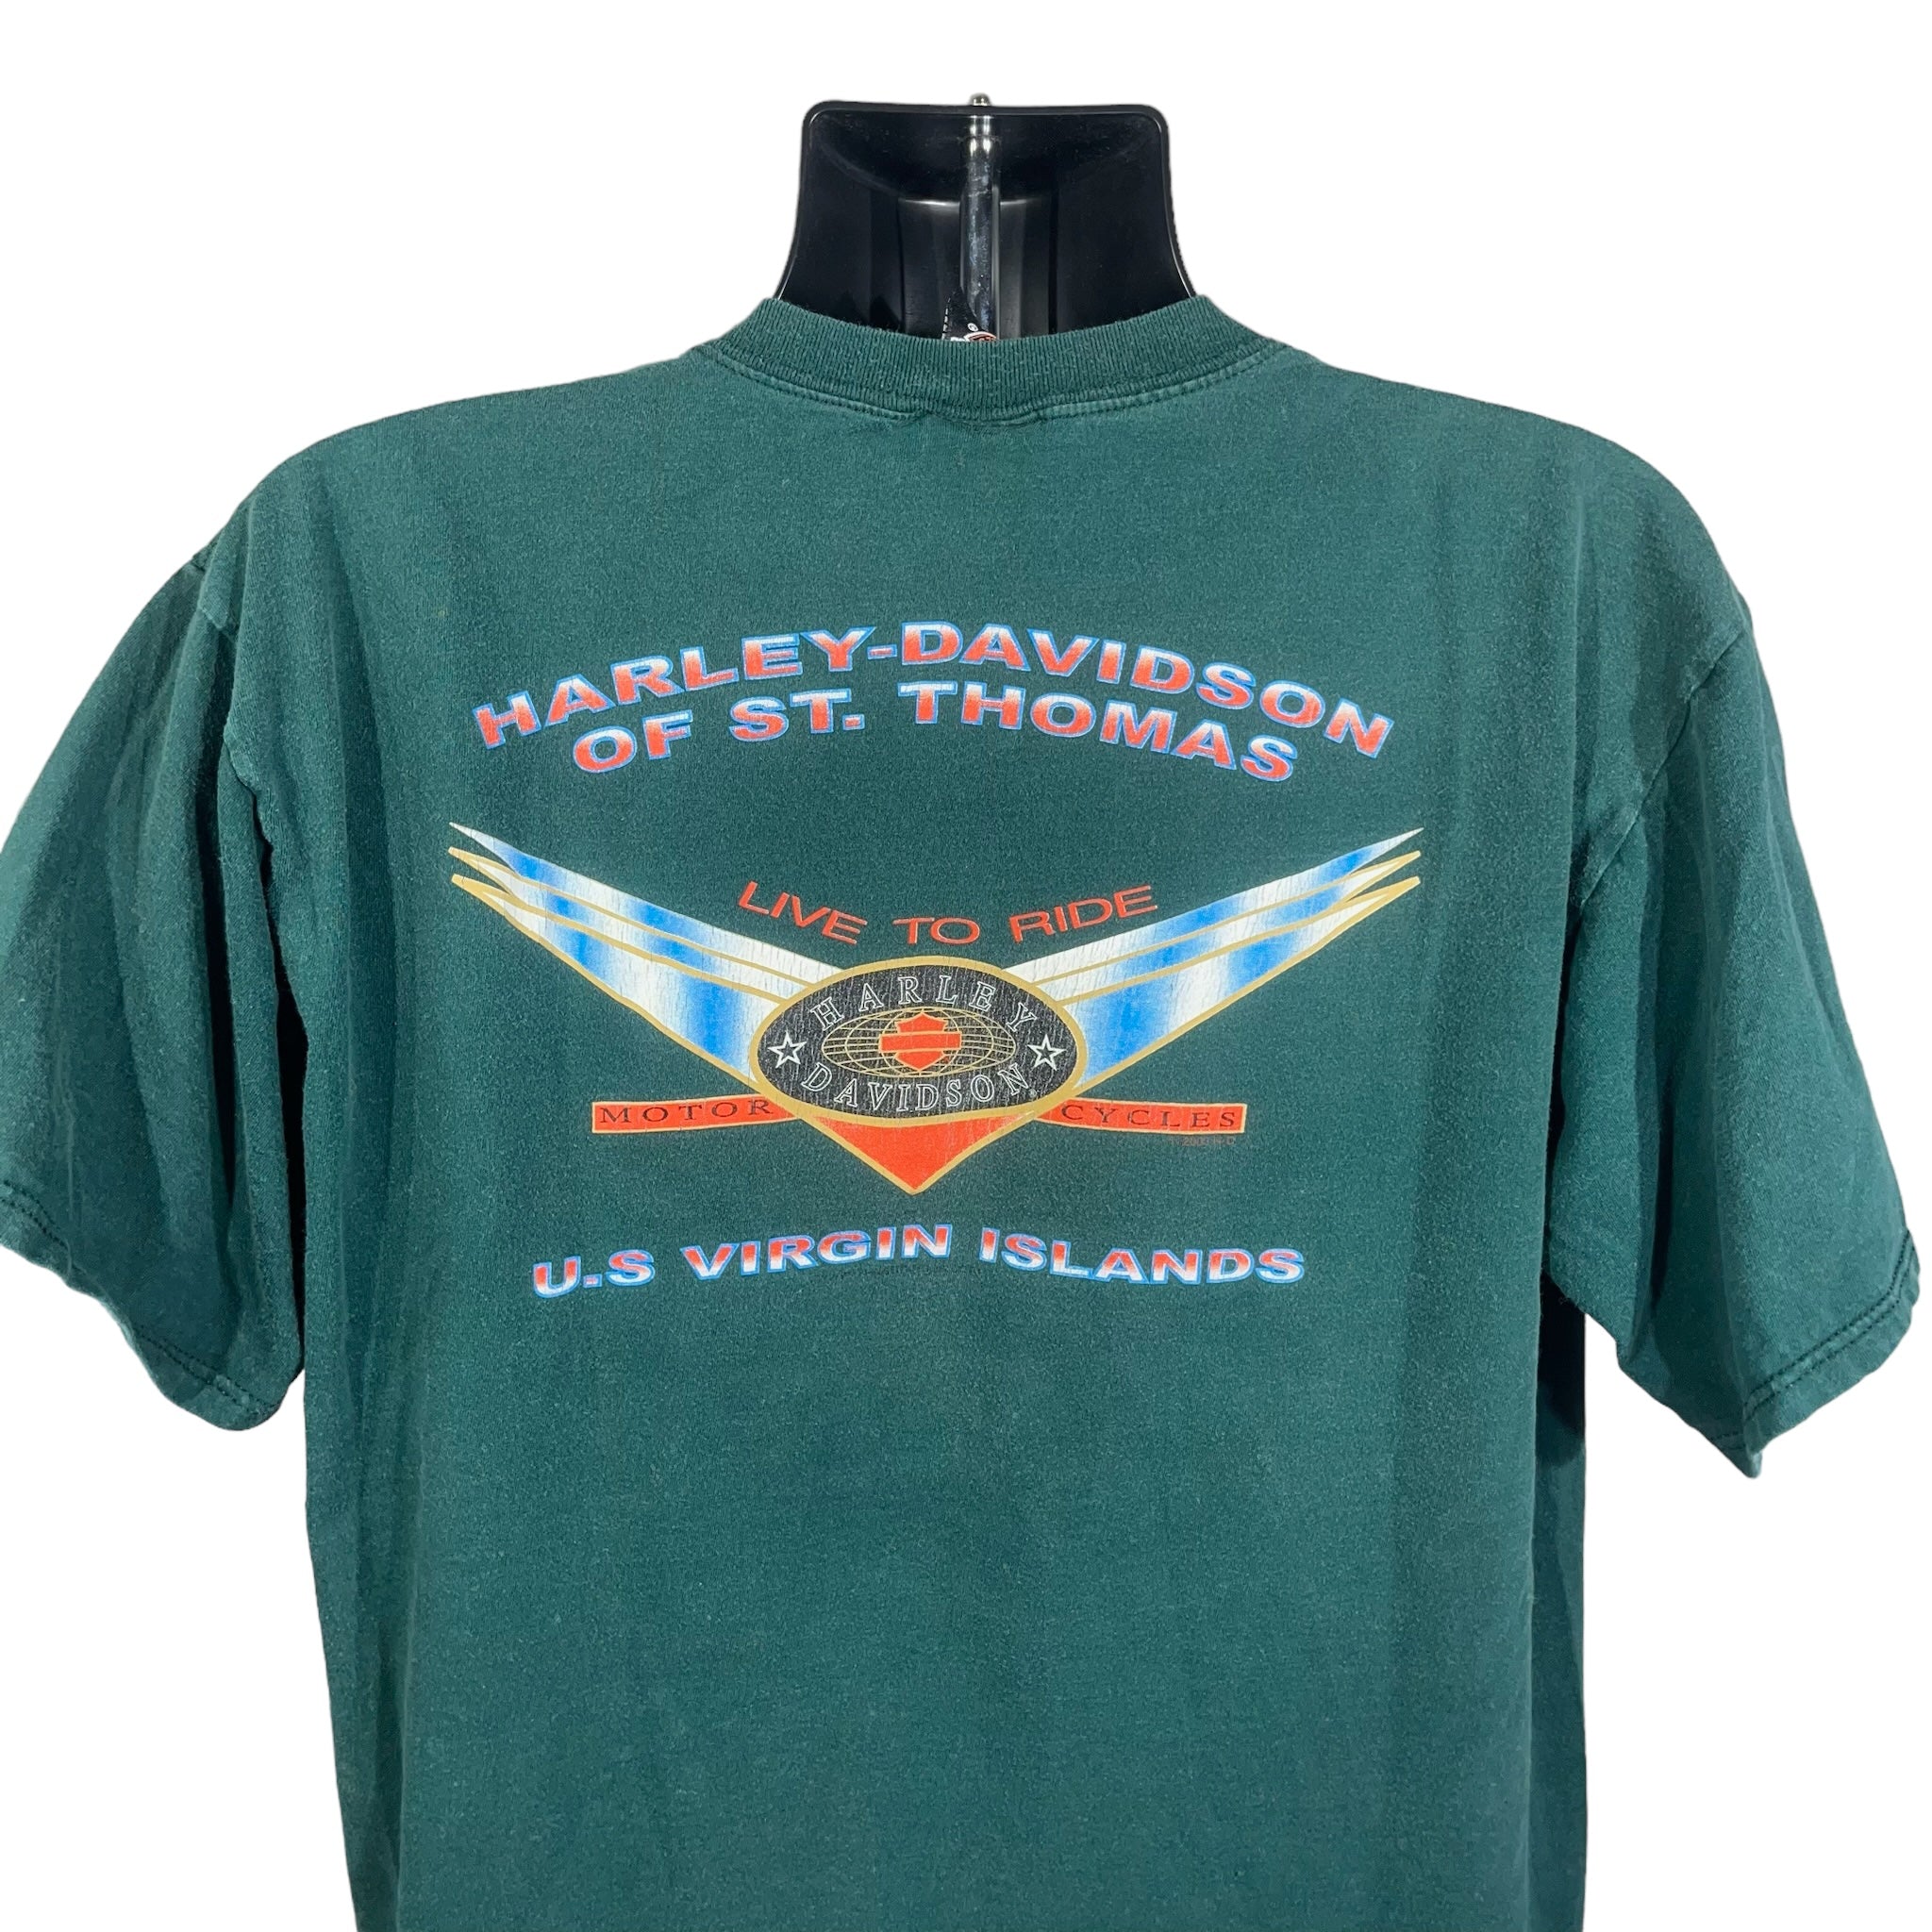 Vintage Harley Davidson Virgin Islands Tee